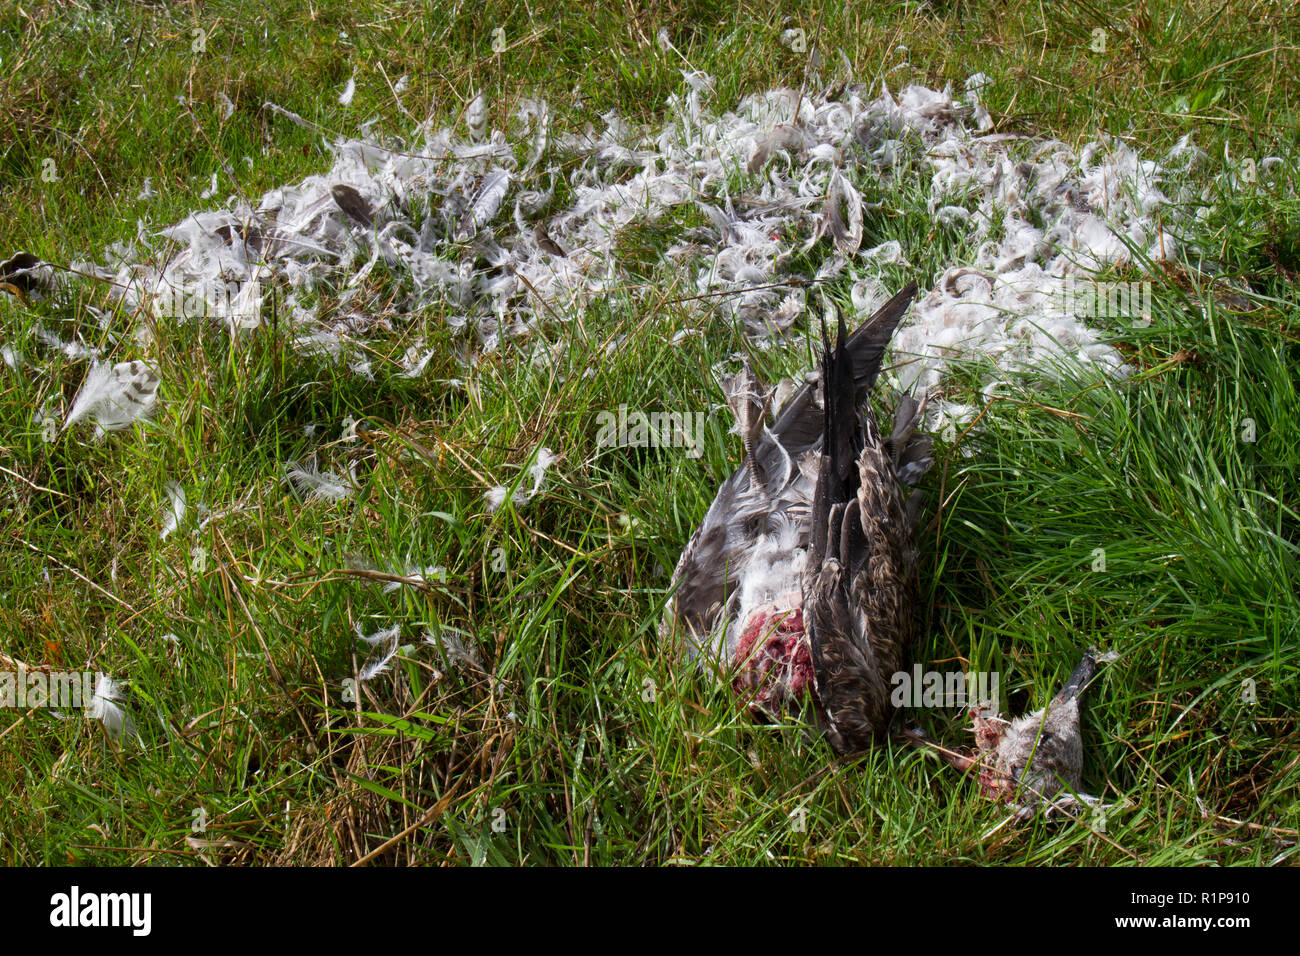 Lesser black-backed gull (Larus fuscus) rimane di un bambino ucciso e in parte mangiato da un uccello da preda, probabilmente un falco pellegrino (Falco peregrinus Foto Stock